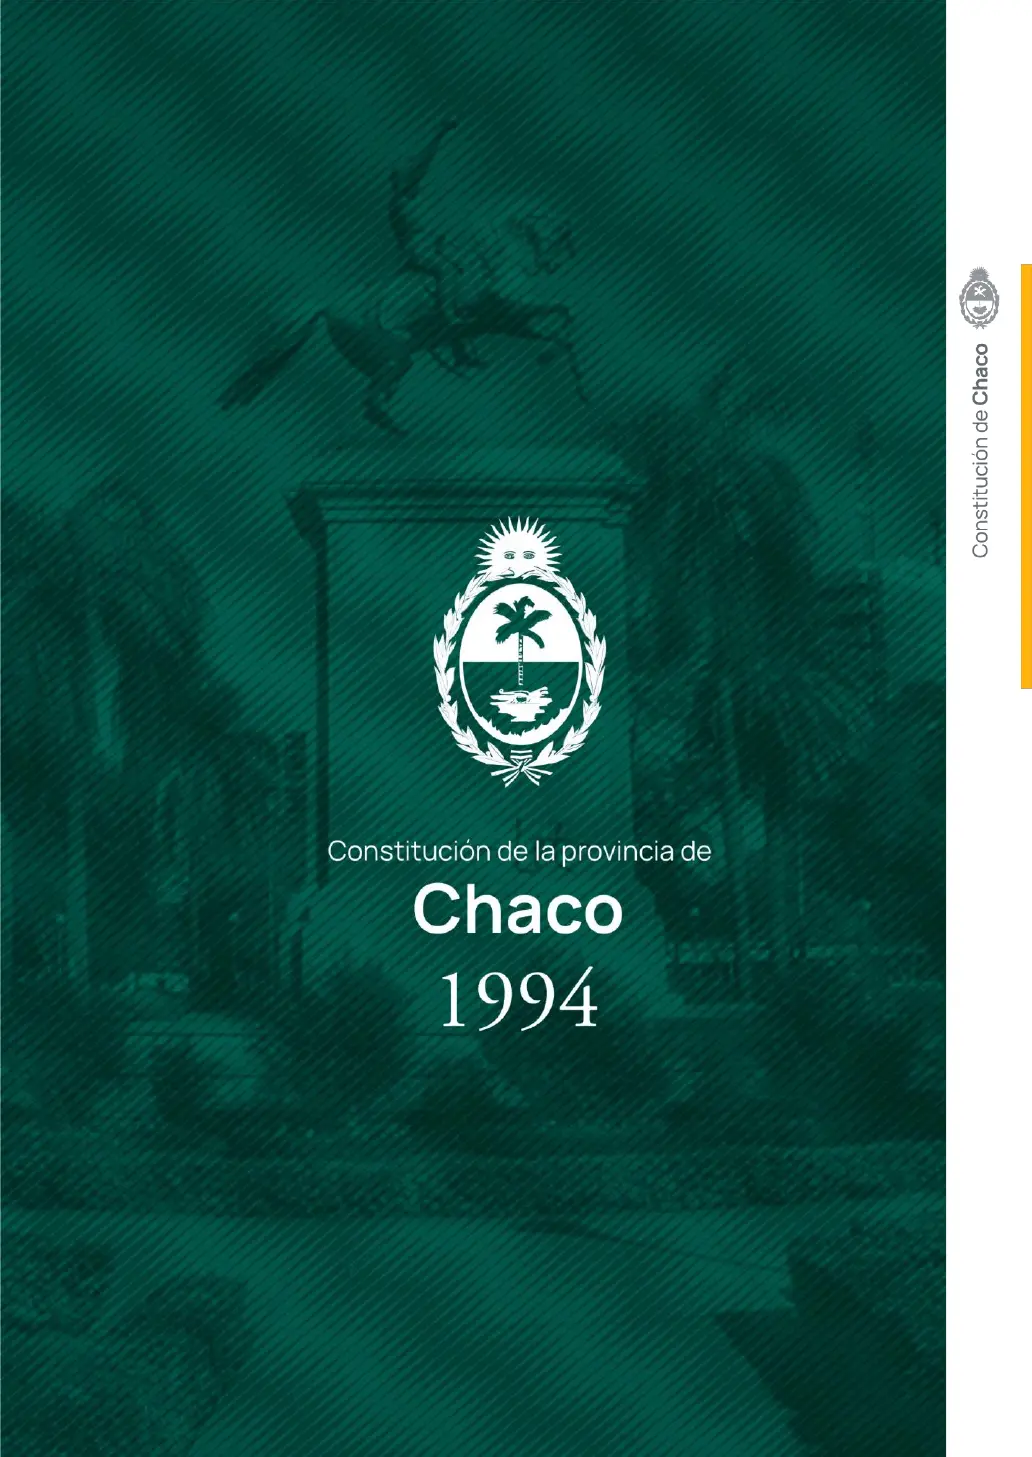 resumen de la constitucion del chaco - Qué determina el artículo 37 de la Constitución del Chaco